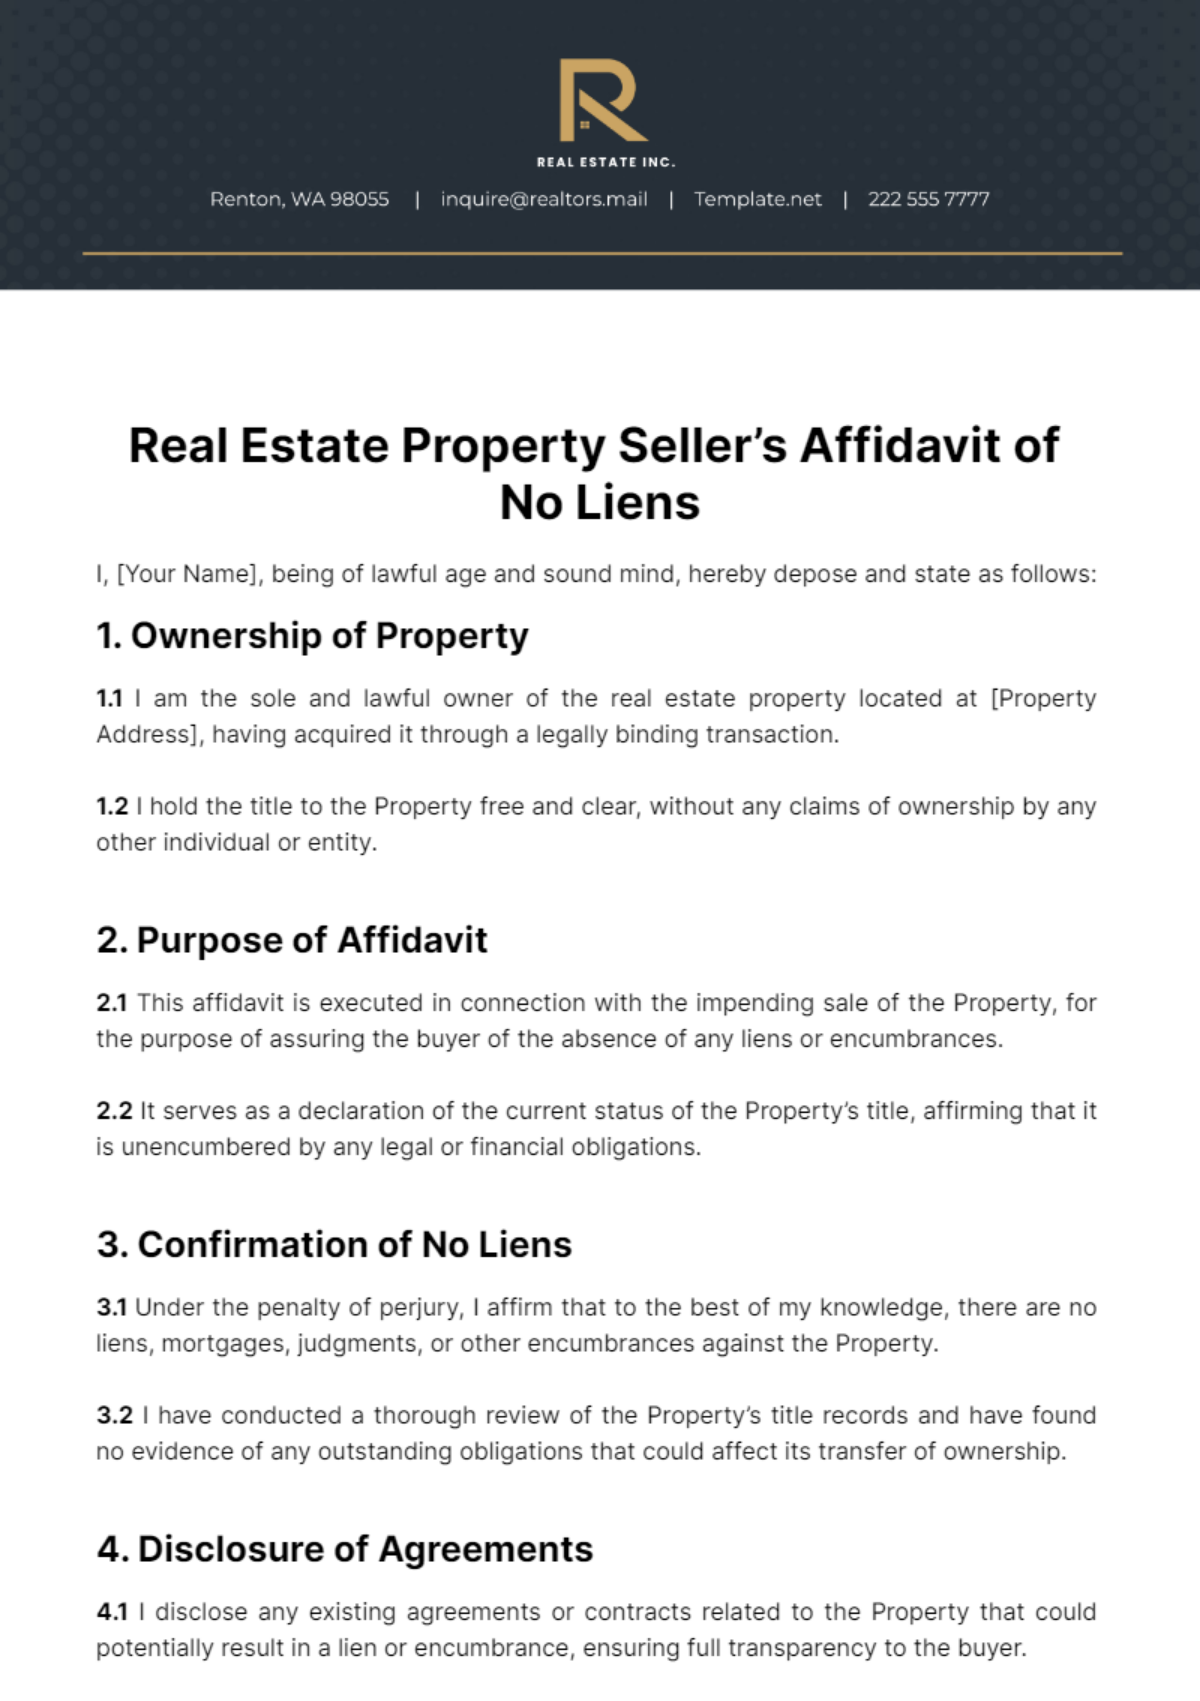 Real Estate Property Seller’s Affidavit of No Liens Template